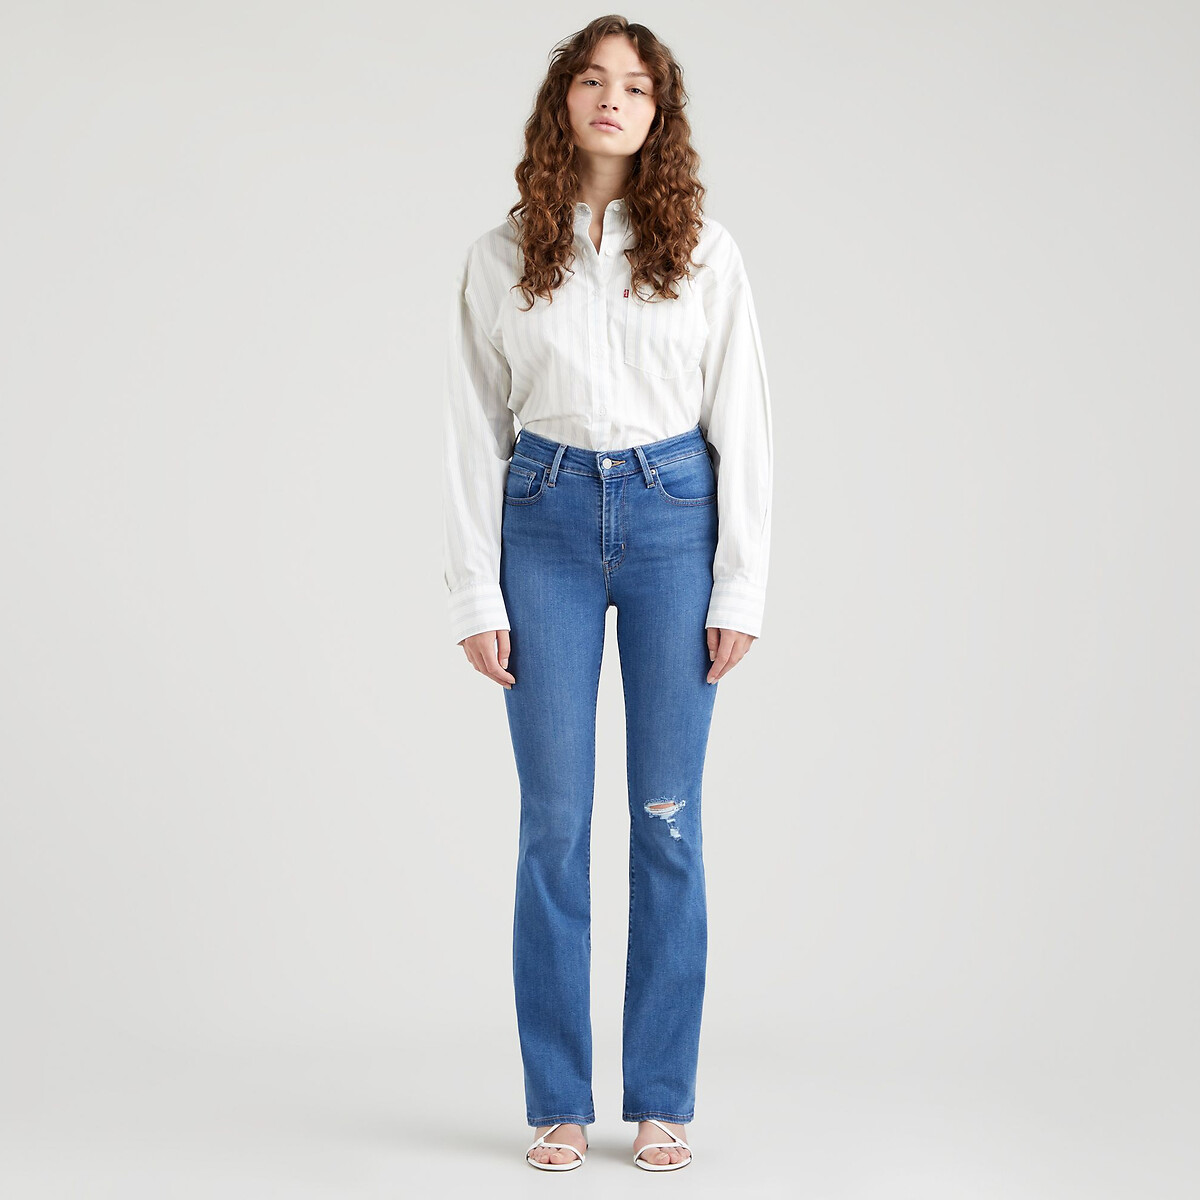 Miinto Femme Vêtements Pantalons & Jeans Jeans Bootcut jeans Boot-cut Jeans Bleu Femme Taille: W28 L34 